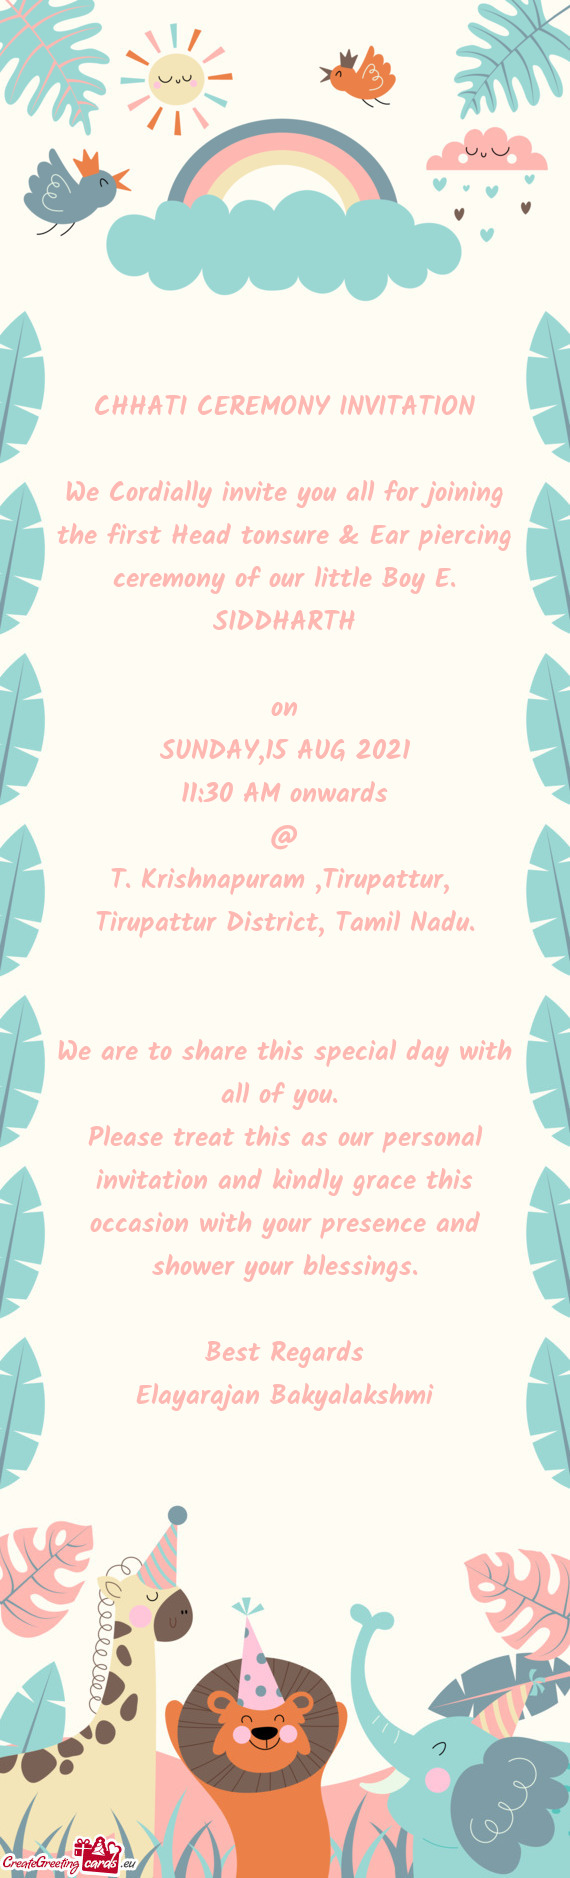 Tirupattur District, Tamil Nadu